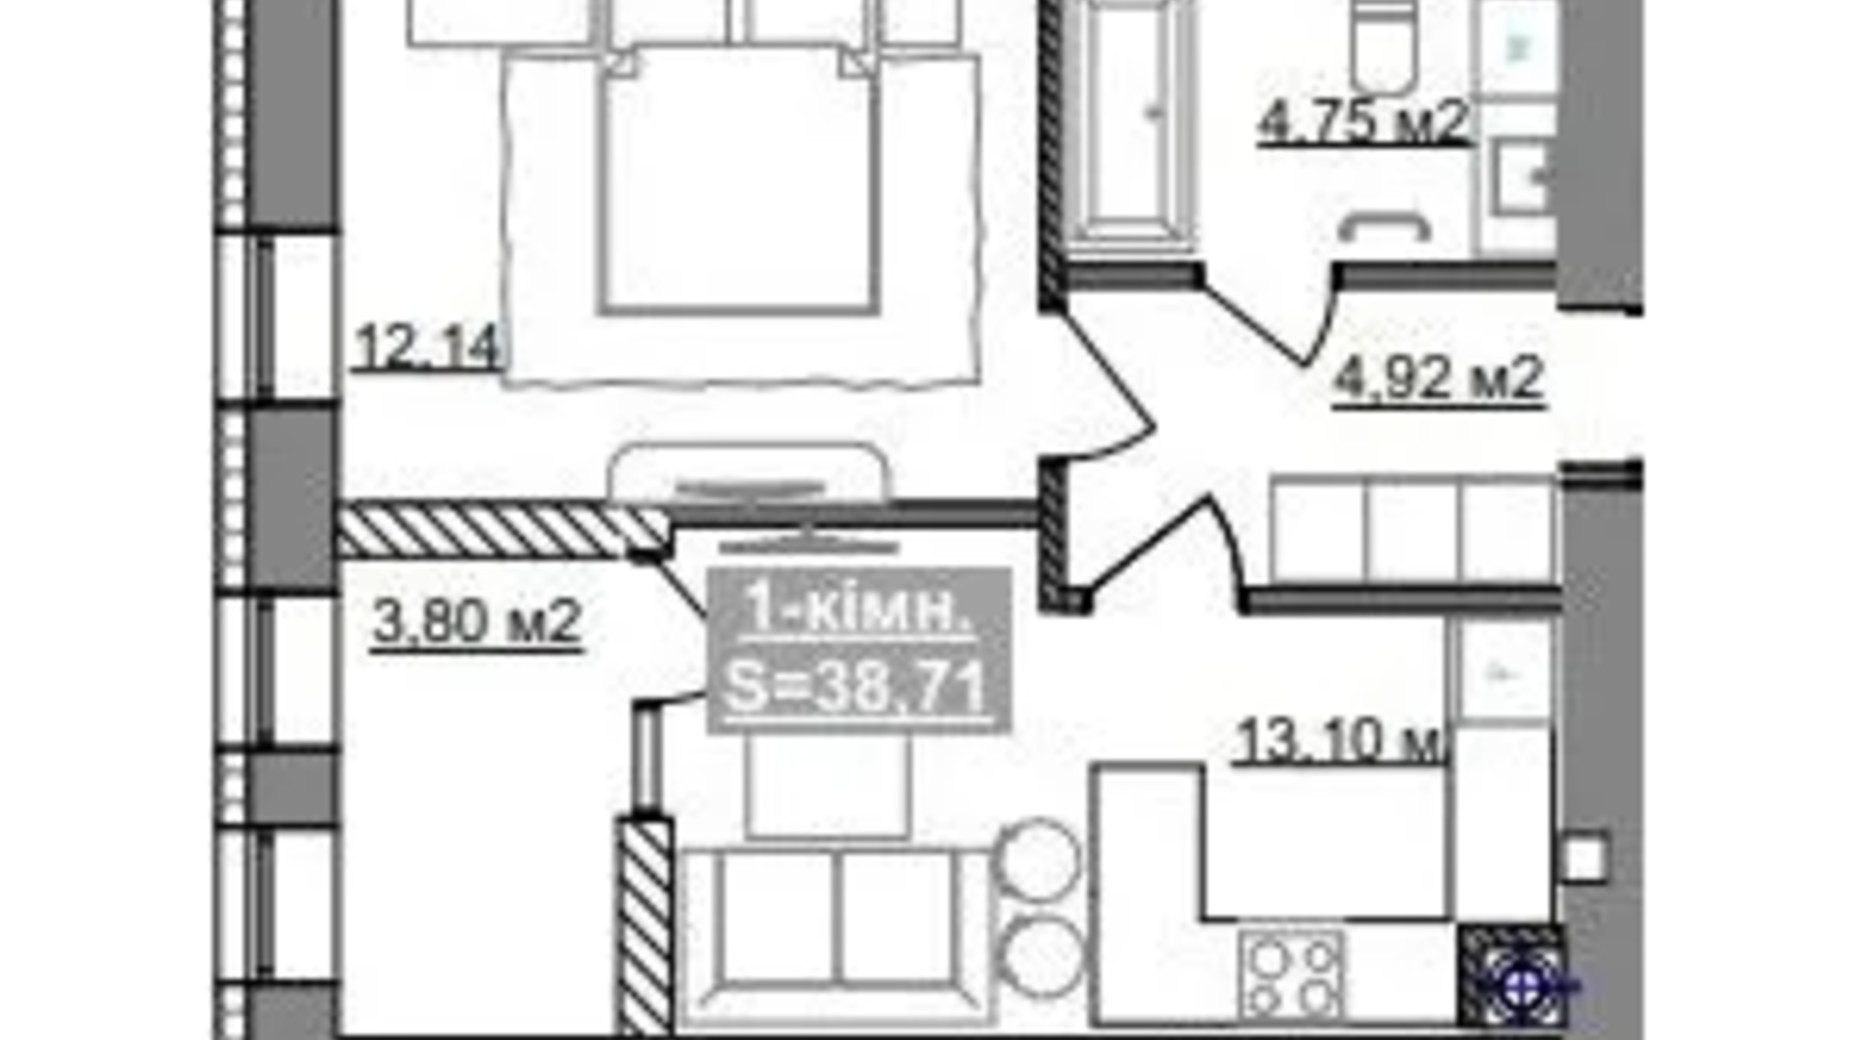 Планування 1-кімнатної квартири в ЖК Паркове містечко (7 черга) 38.71 м², фото 653513